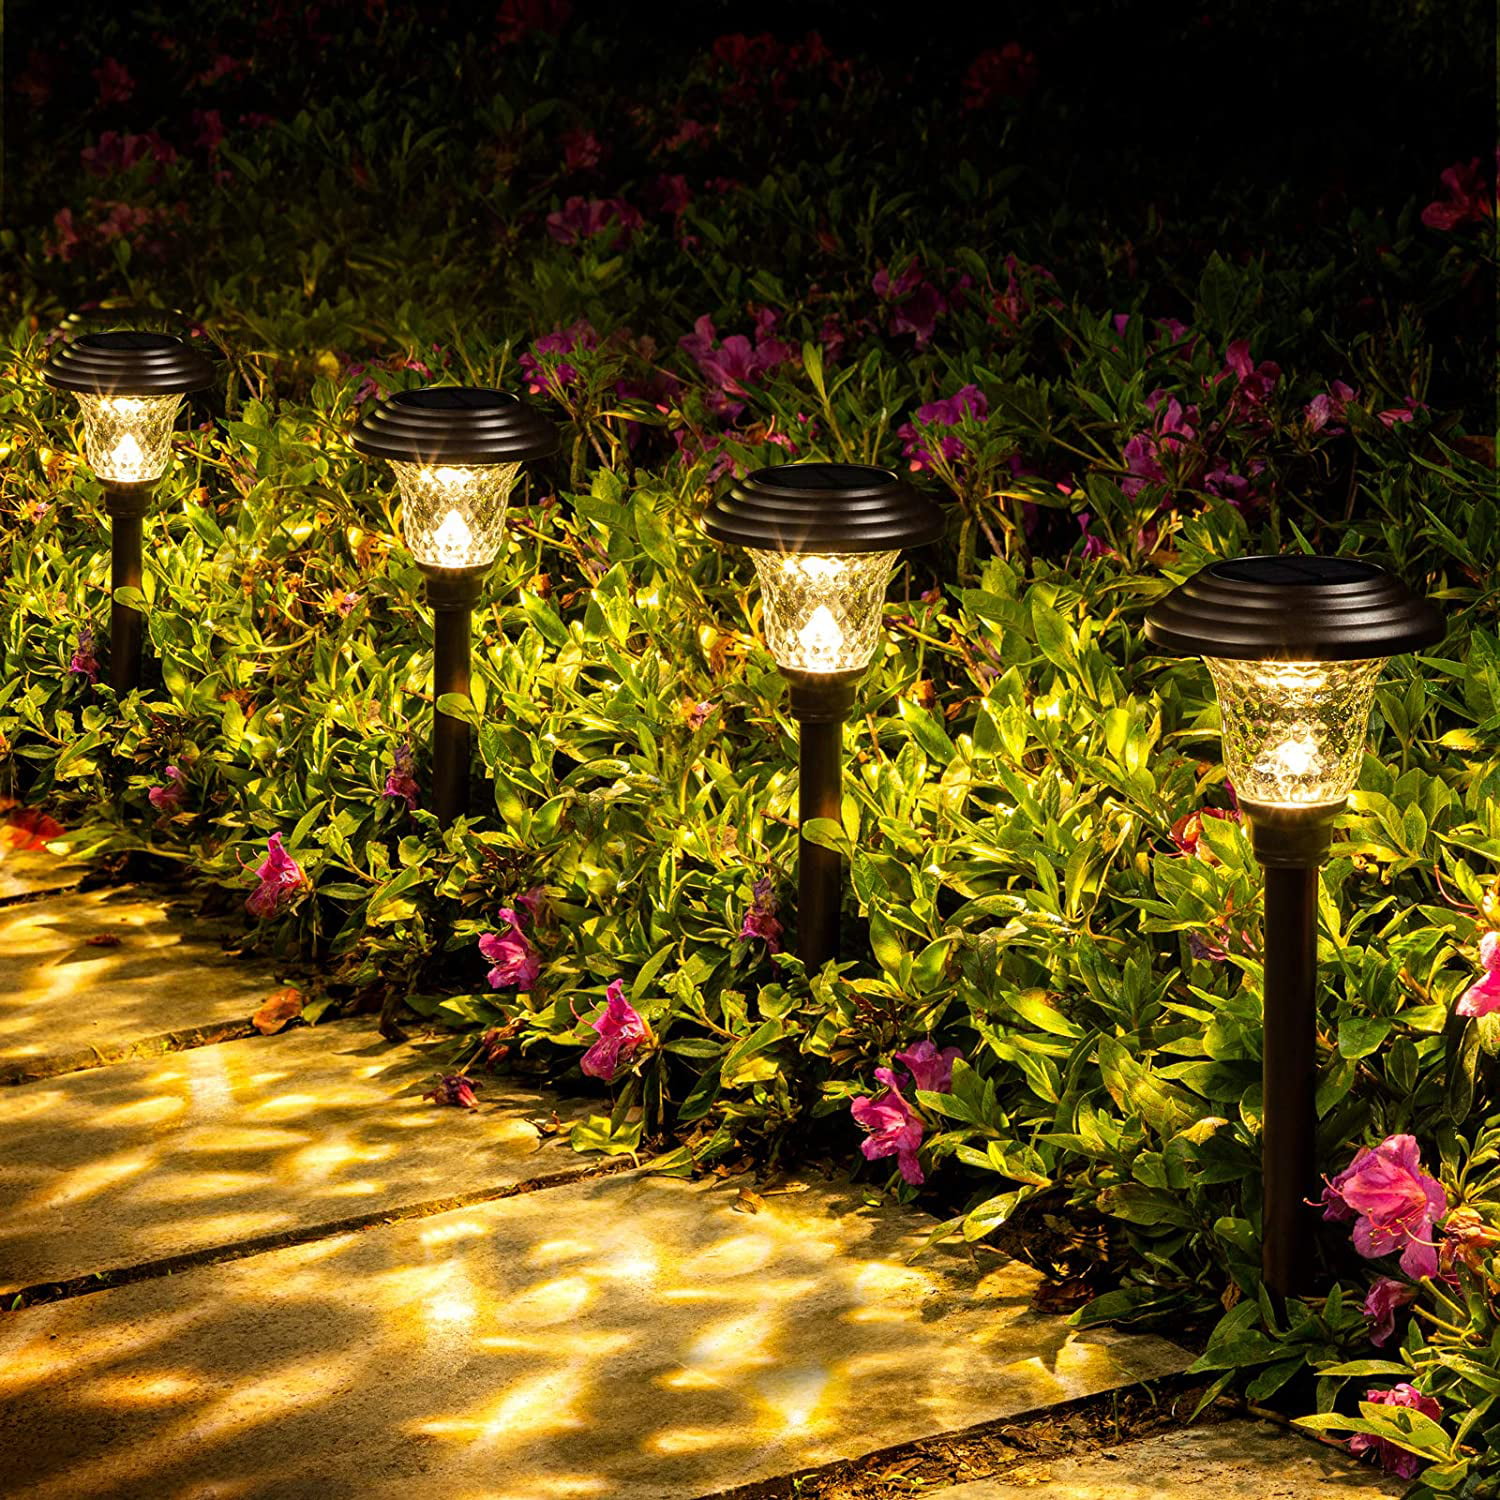 Details about  / 8 Pack Solar Pathway Lights Outdoor Garden LED Bollard Pillar Light Garden Edge